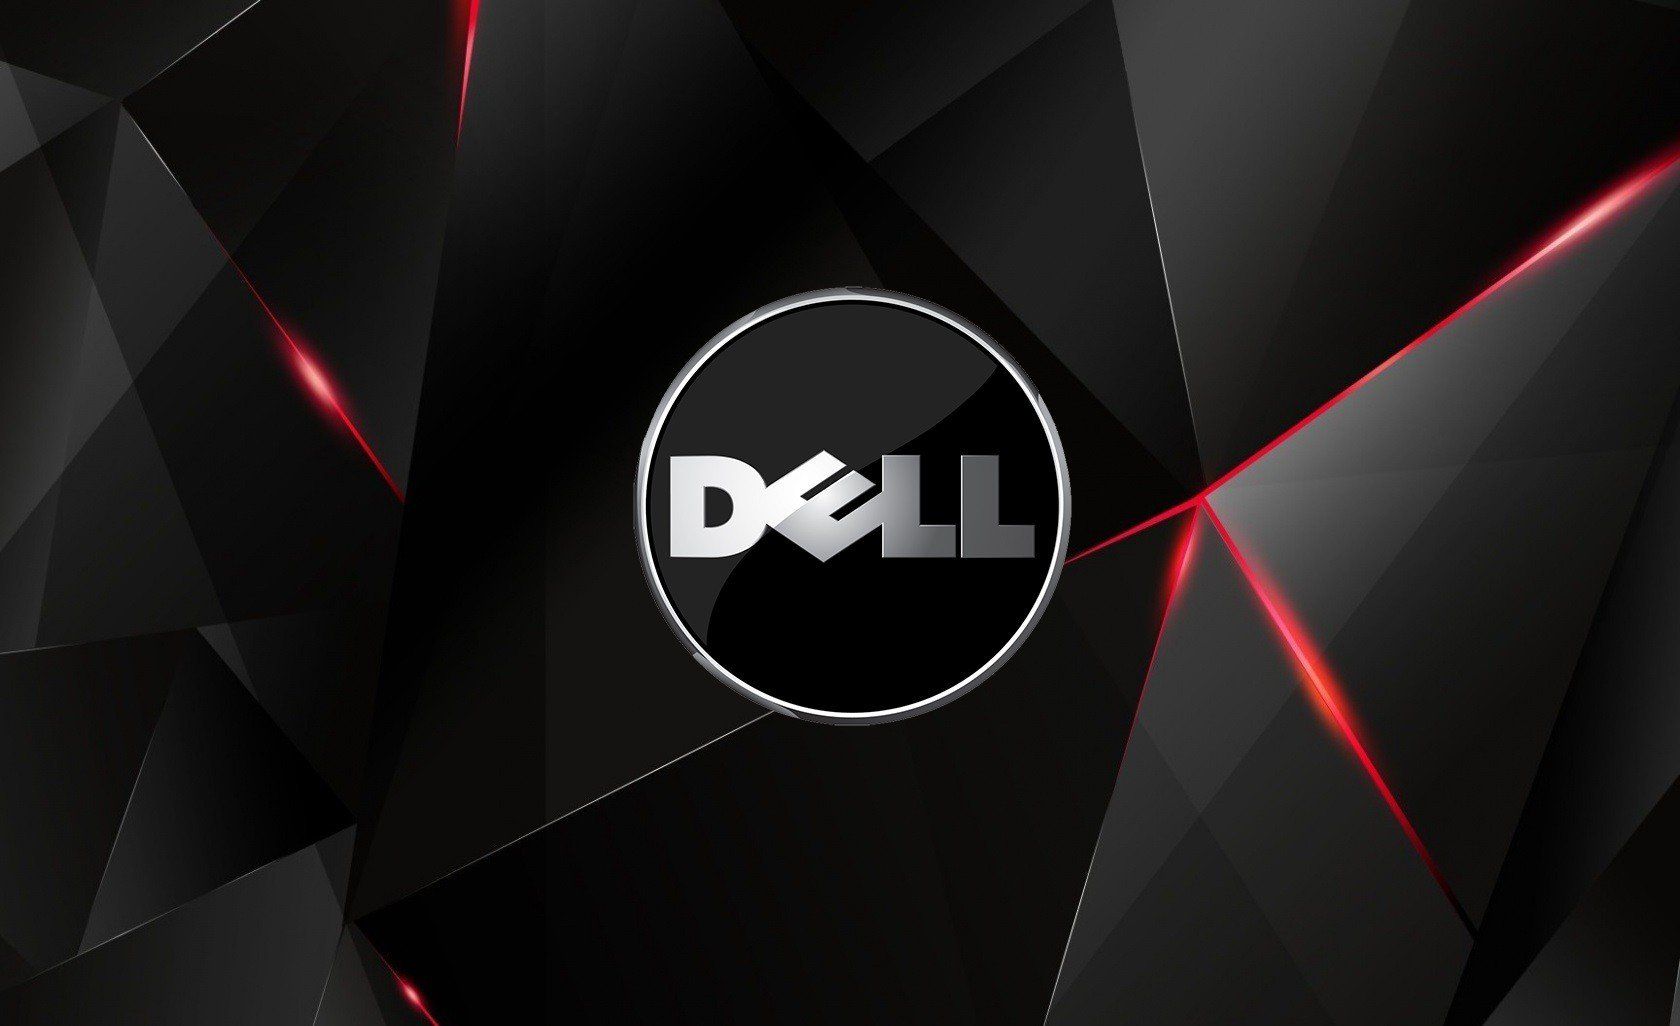 Công nghệ thông tin và máy tính Dell luôn là sự lựa chọn hàng đầu cho những ai yêu thích sự tiện dụng và công nghệ. Với những thiết kế độc đáo và chất lượng đỉnh cao, Dell sẽ giúp cho bạn hoàn thành mọi nhiệm vụ với sự dễ dàng và hiệu quả. Hãy khám phá ngay để tận hưởng những trải nghiệm độc nhất vô nhị!